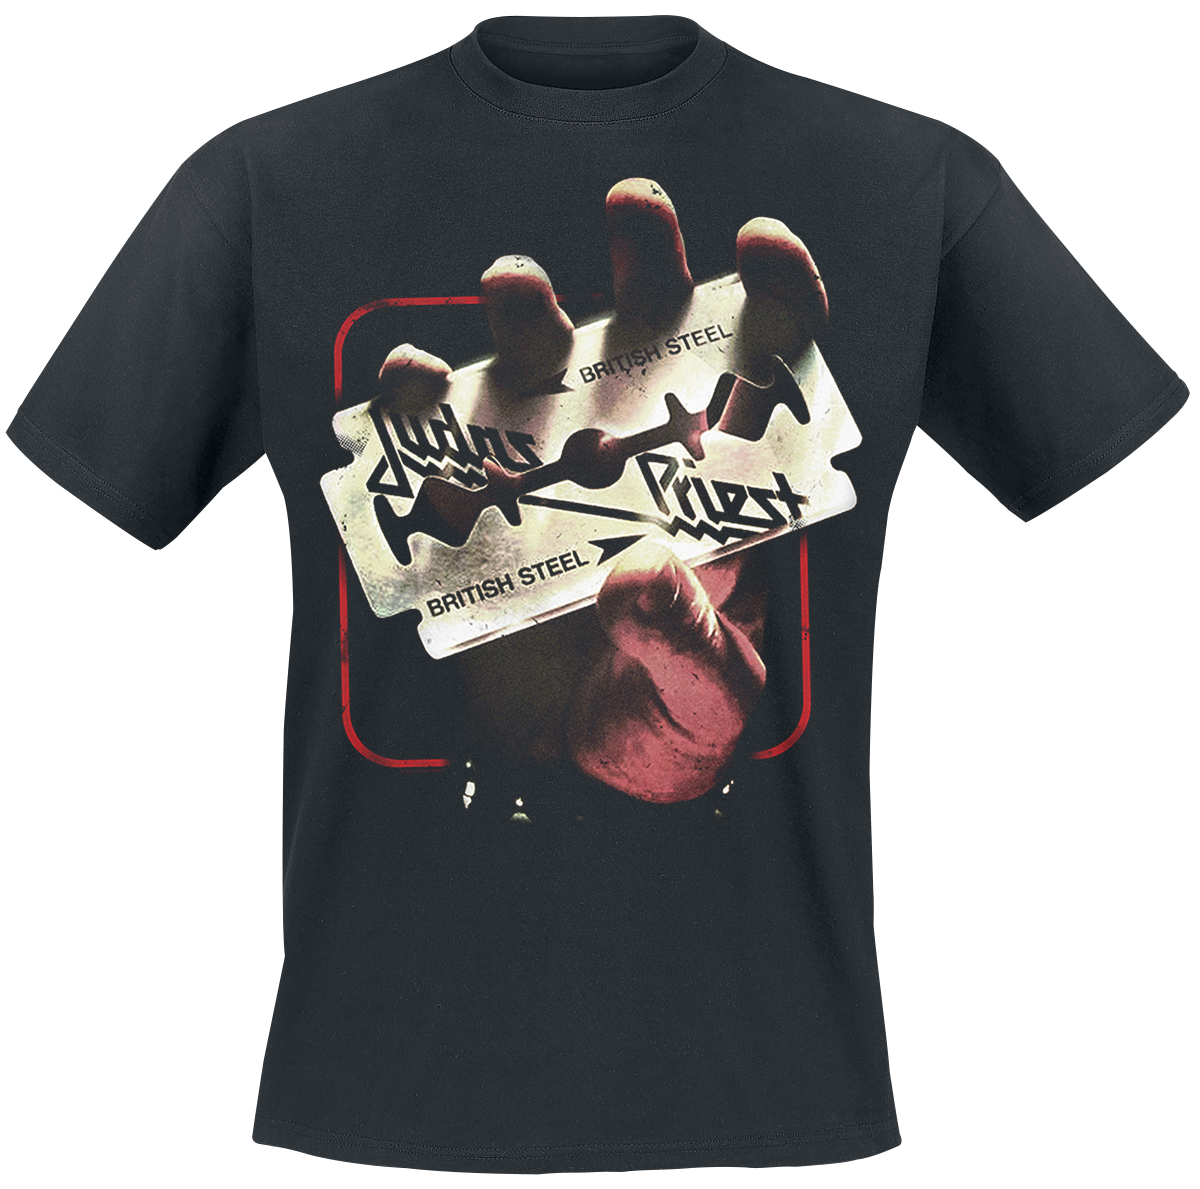 Judas Priest - British Steel 50HMY Tour - T-Shirt - schwarz - EMP Exklusiv!